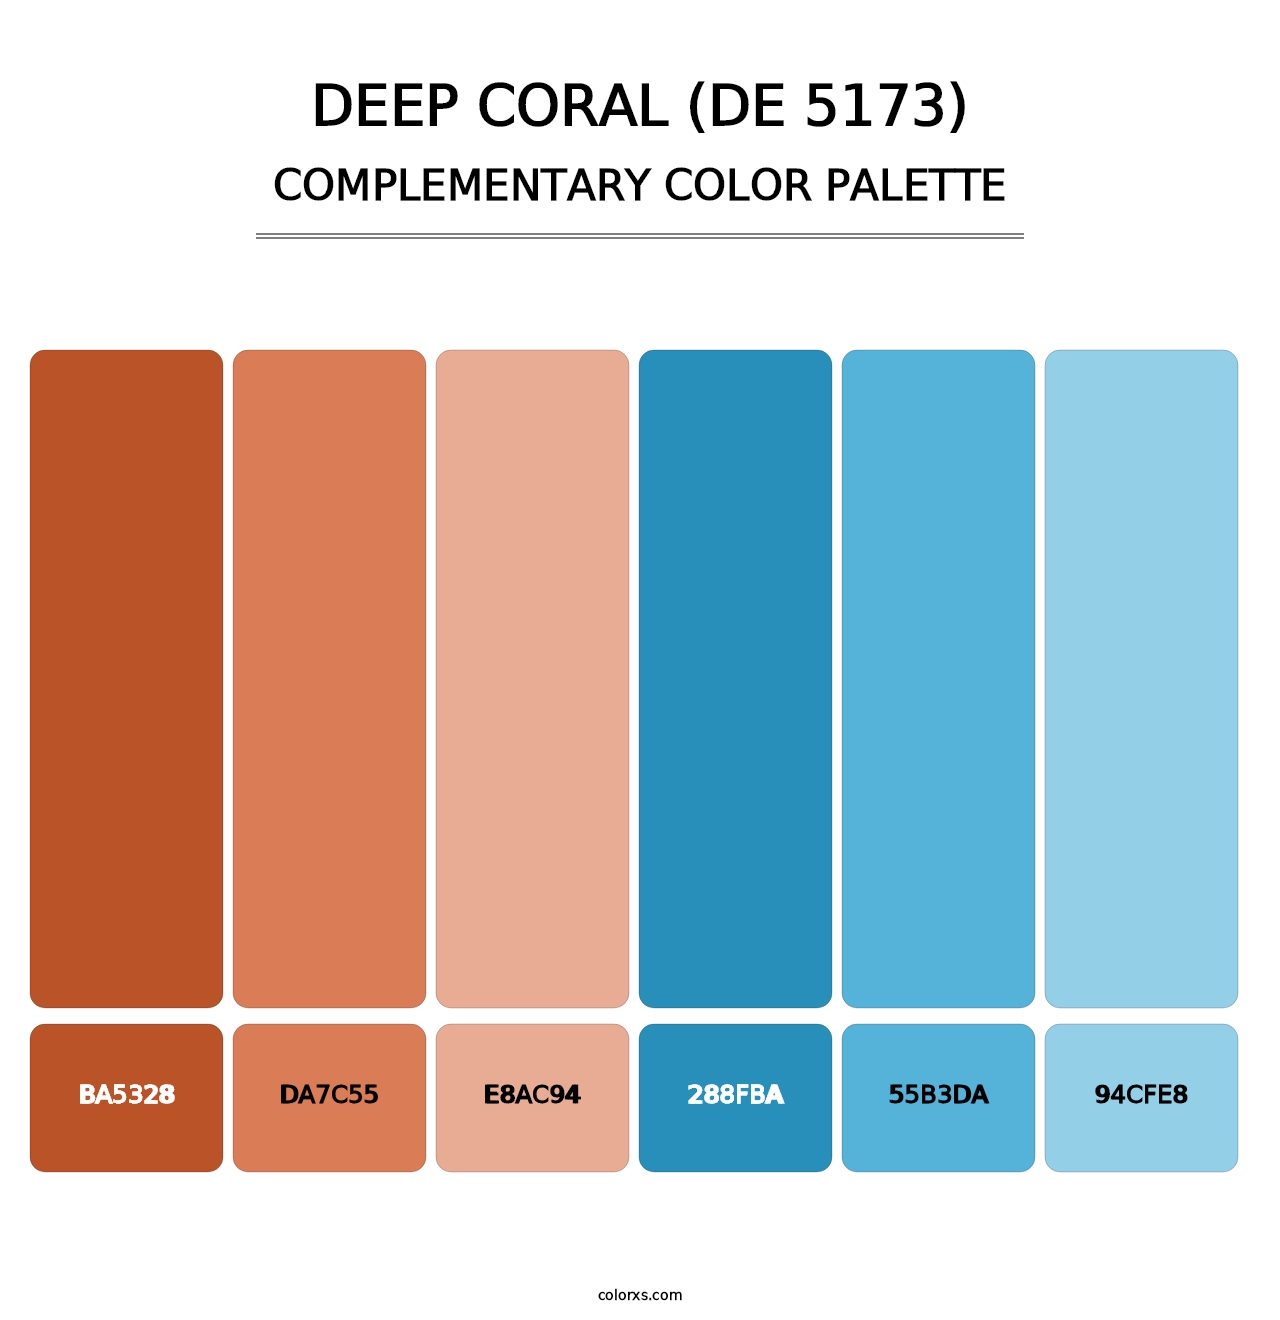 Deep Coral (DE 5173) - Complementary Color Palette